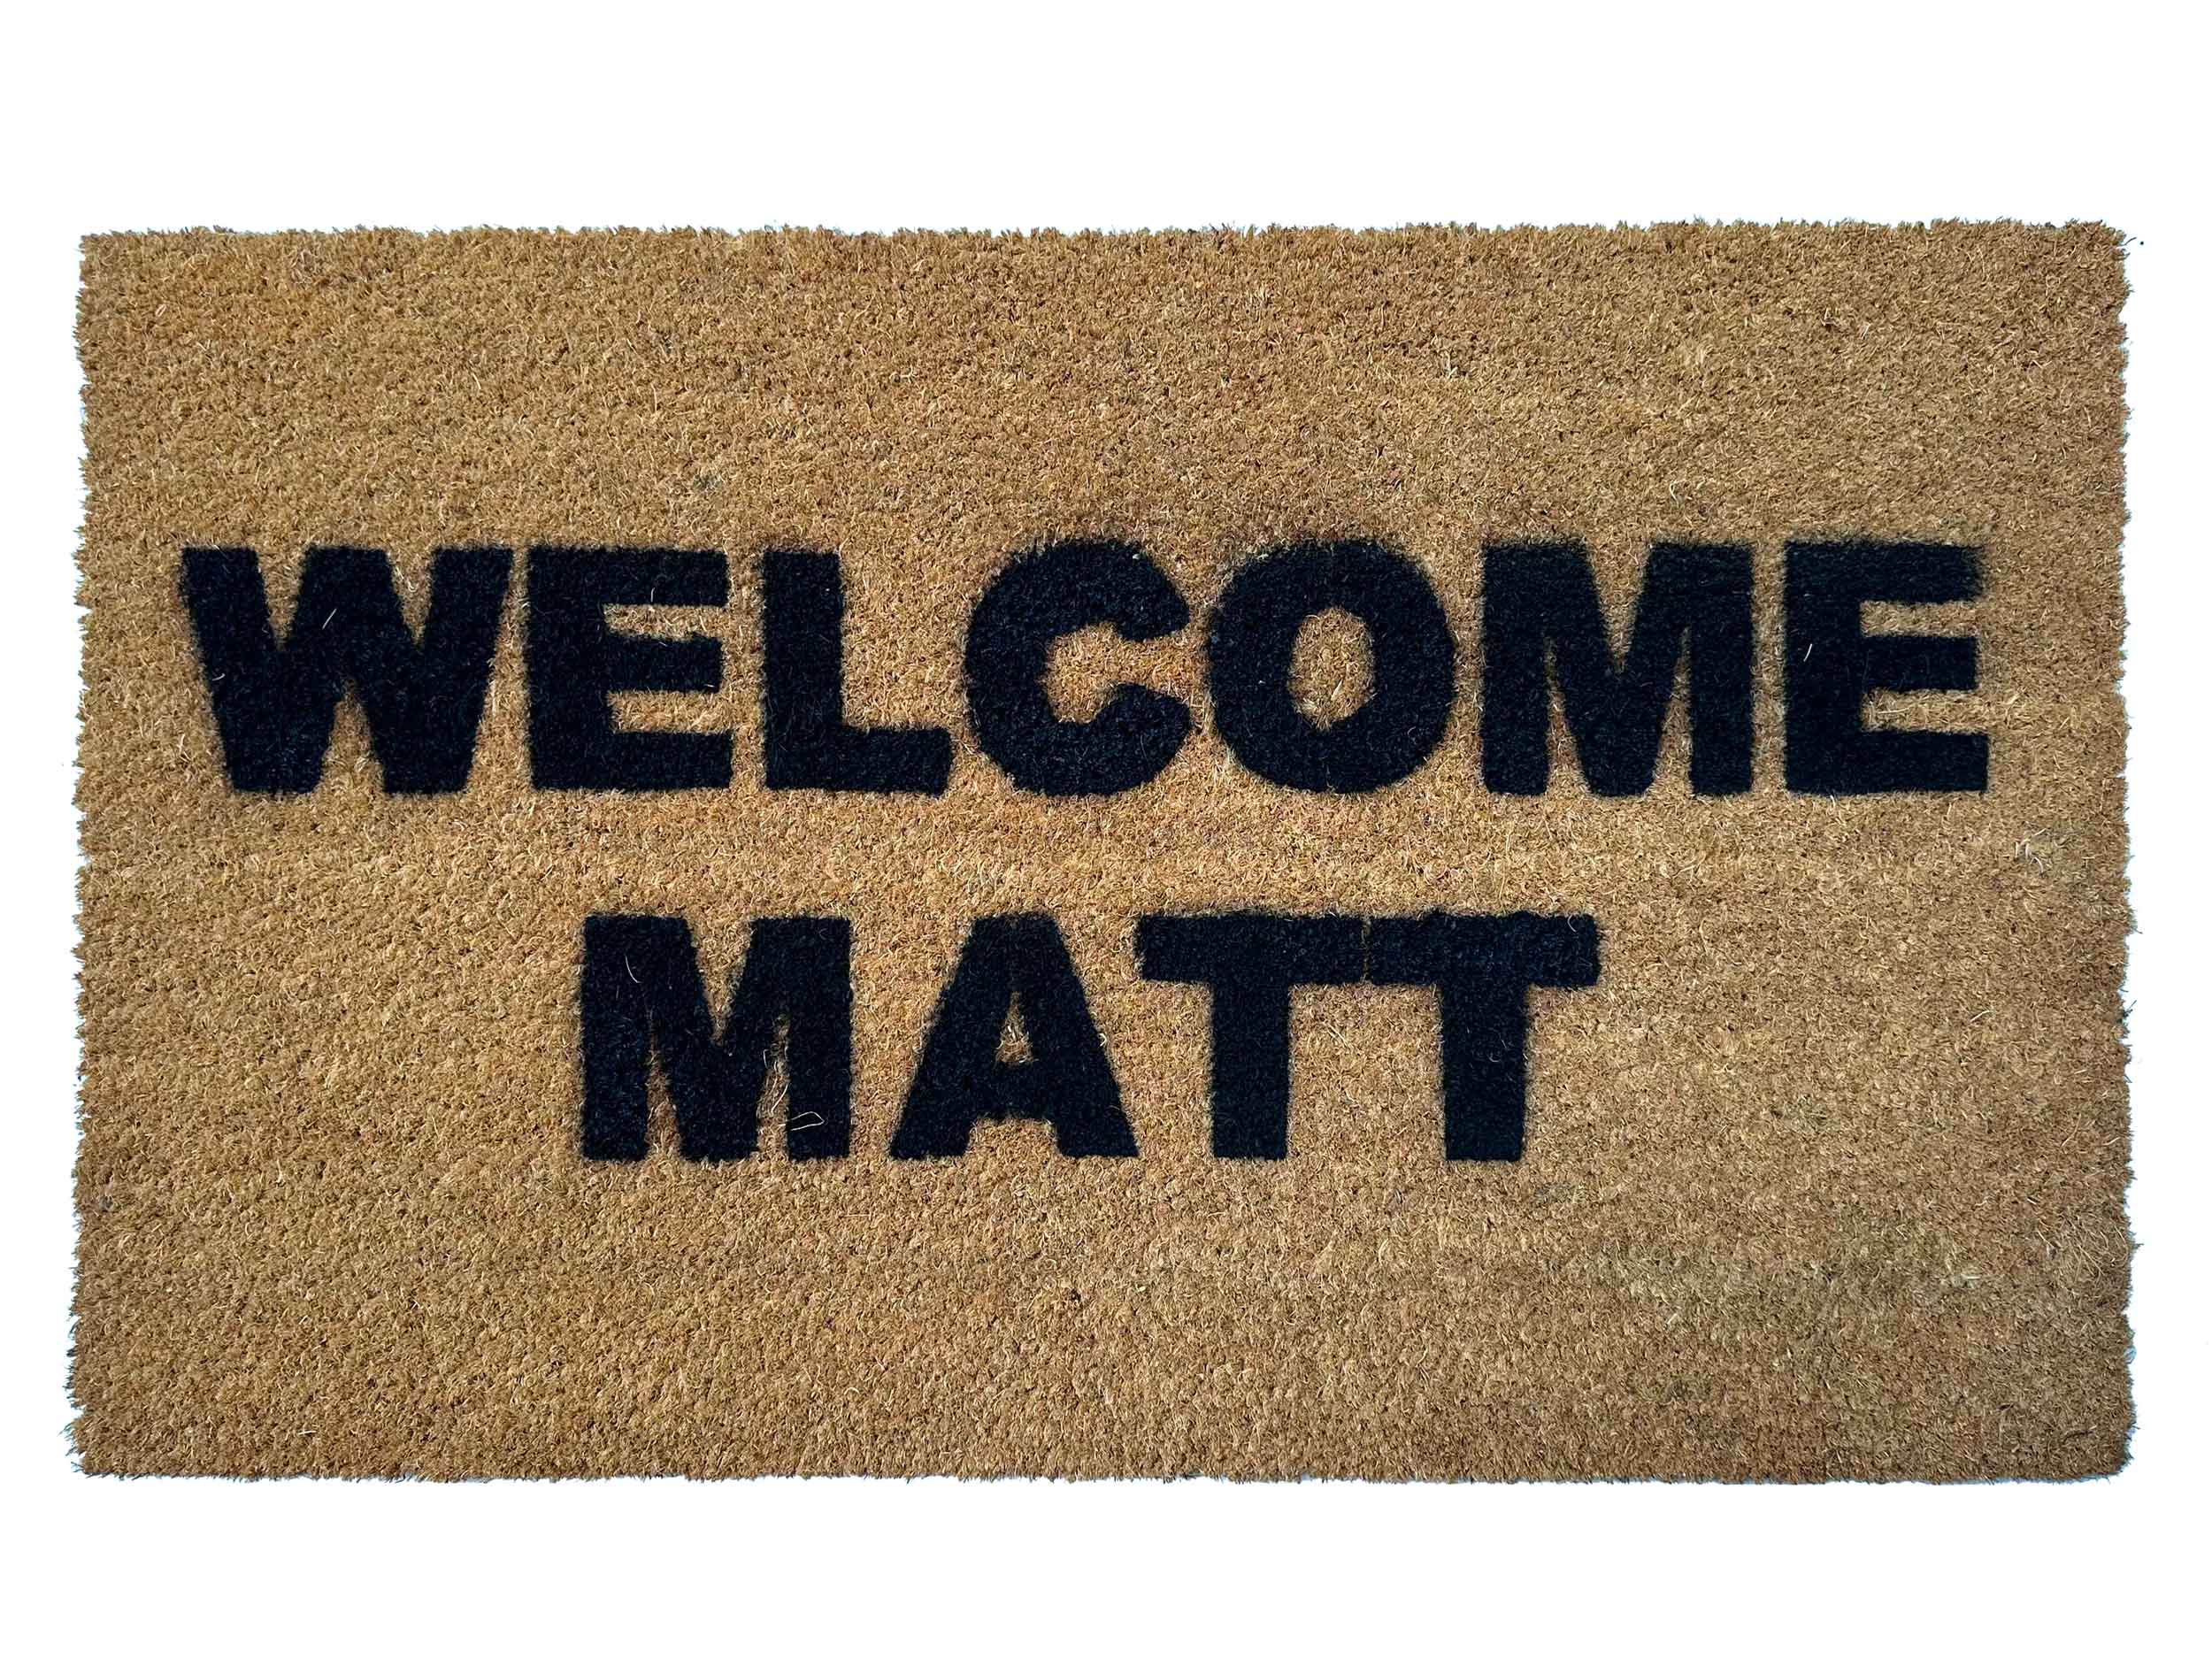 https://www.damngooddoormats.com/sites/damngooddoormats.indiemade.com/files/welcome-matt-funny-gift-for-him-outdoor-coir-damn-good-doormats.jpg